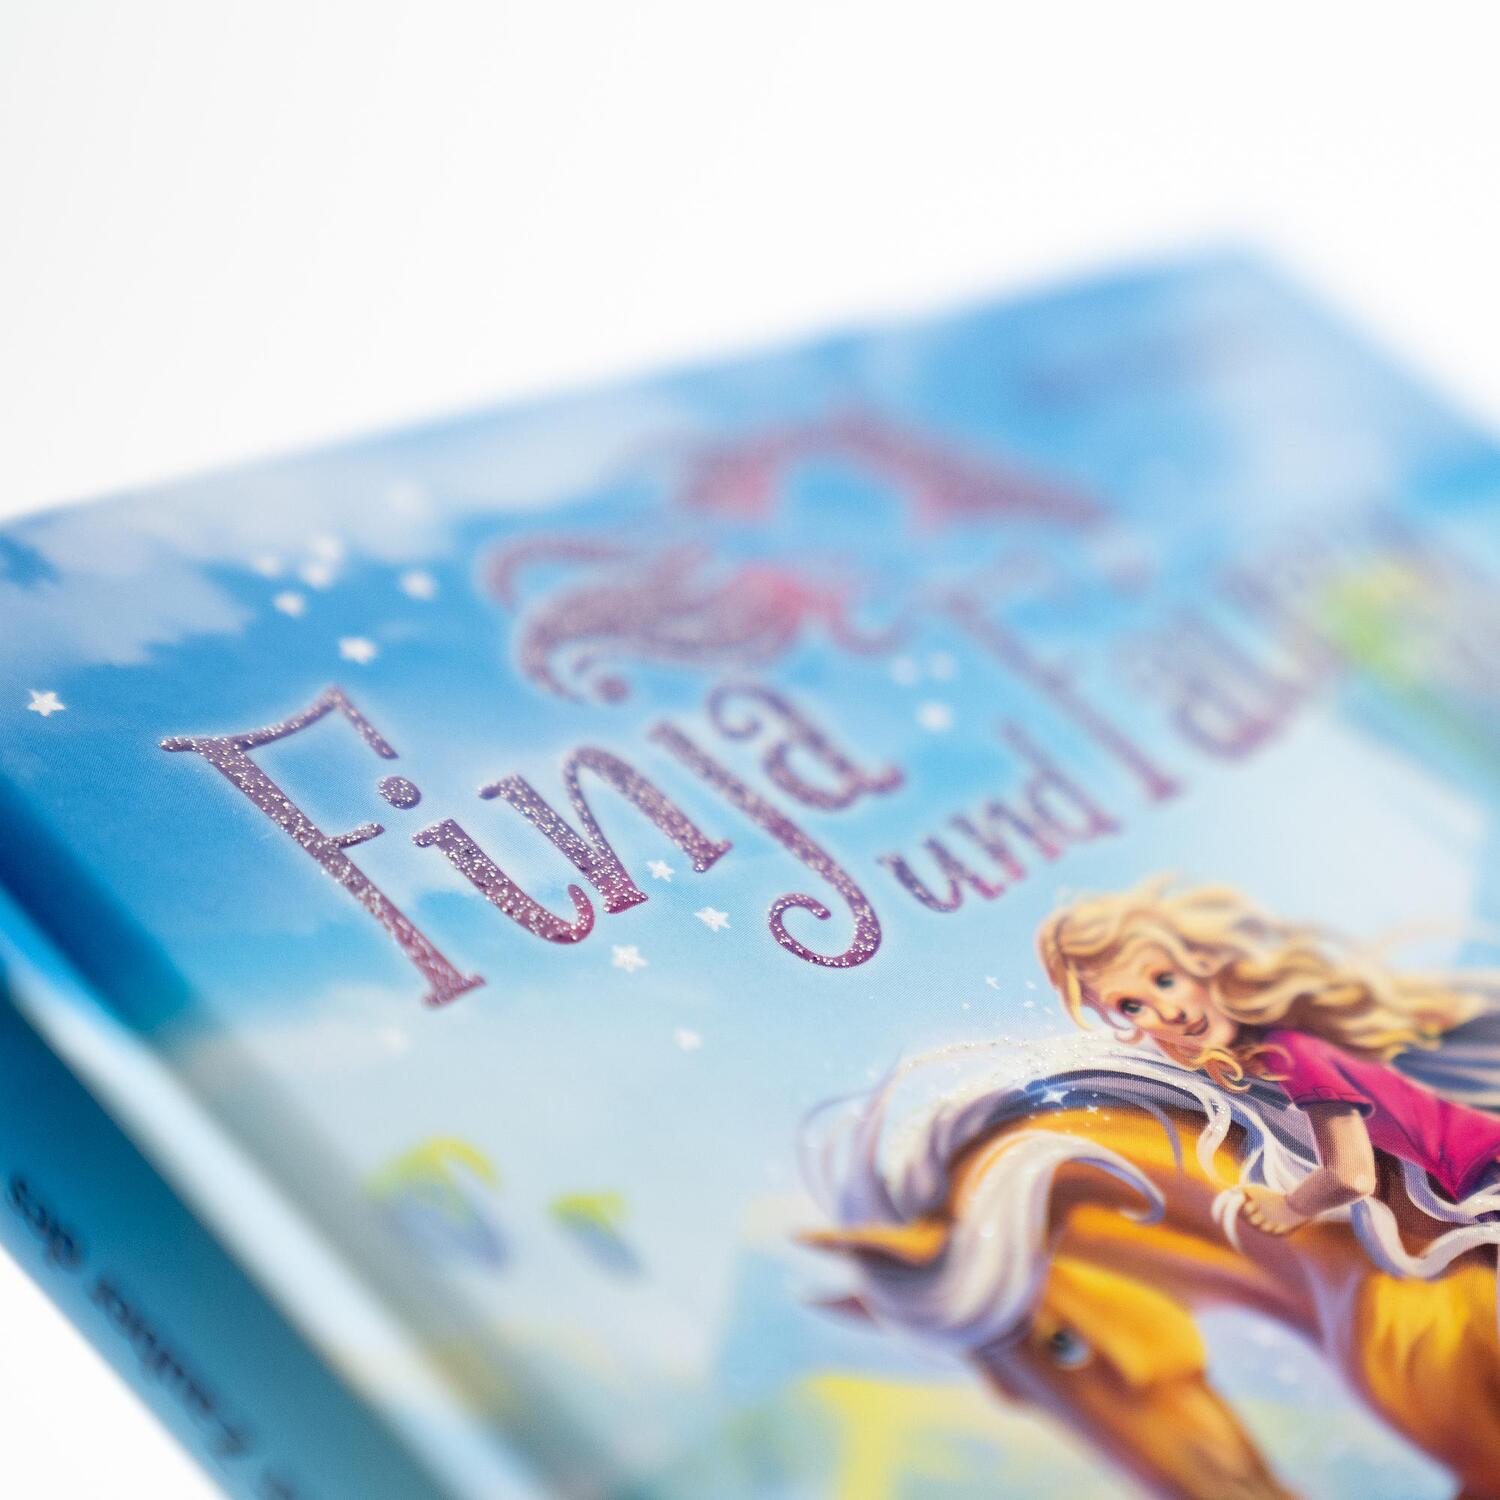 Bild: 9783505151248 | Finja und Fairy - Der Zauber des Vergessens | Ellie Mattes | Buch